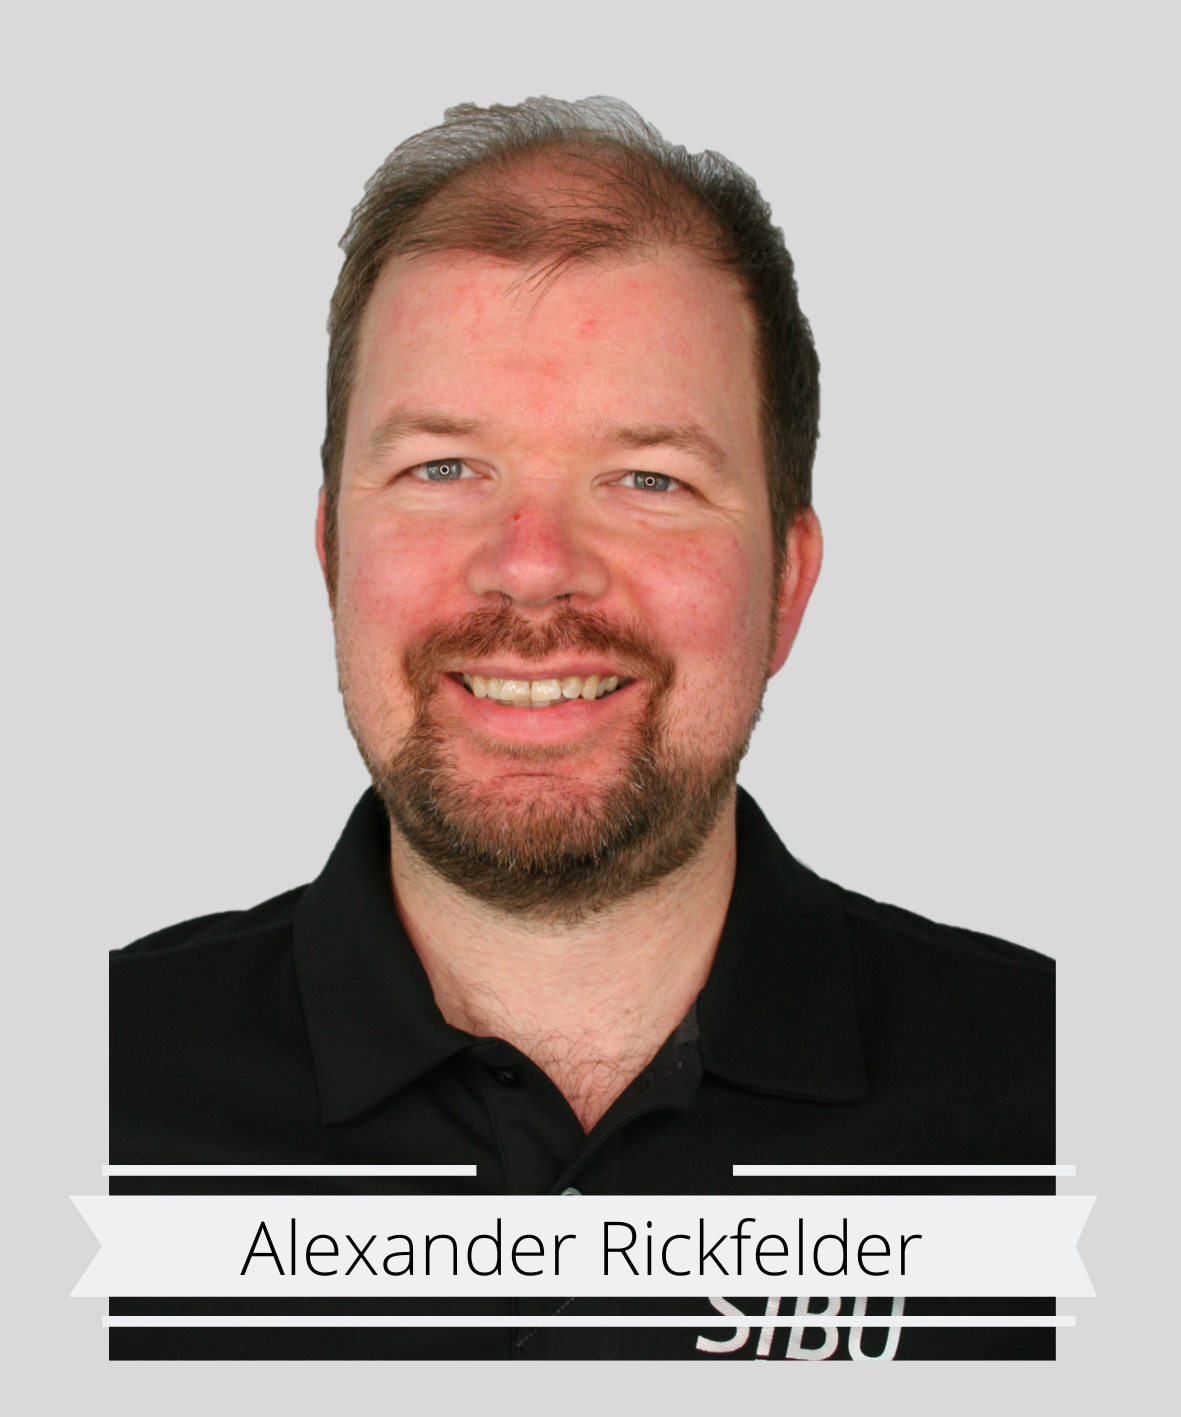 Alexander Rickfelder